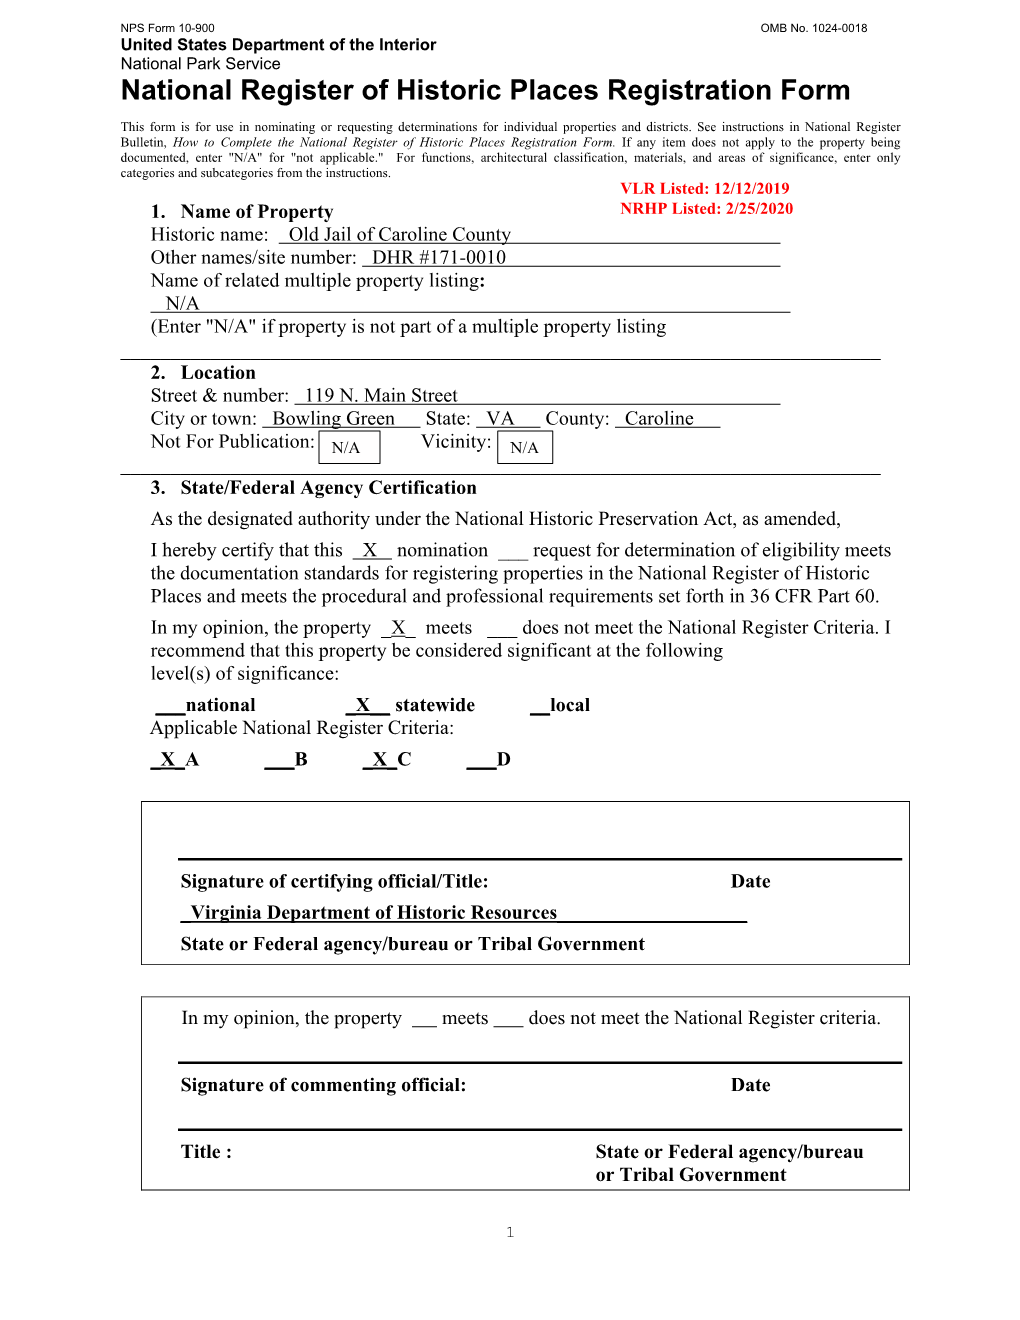 Nomination Form (Va